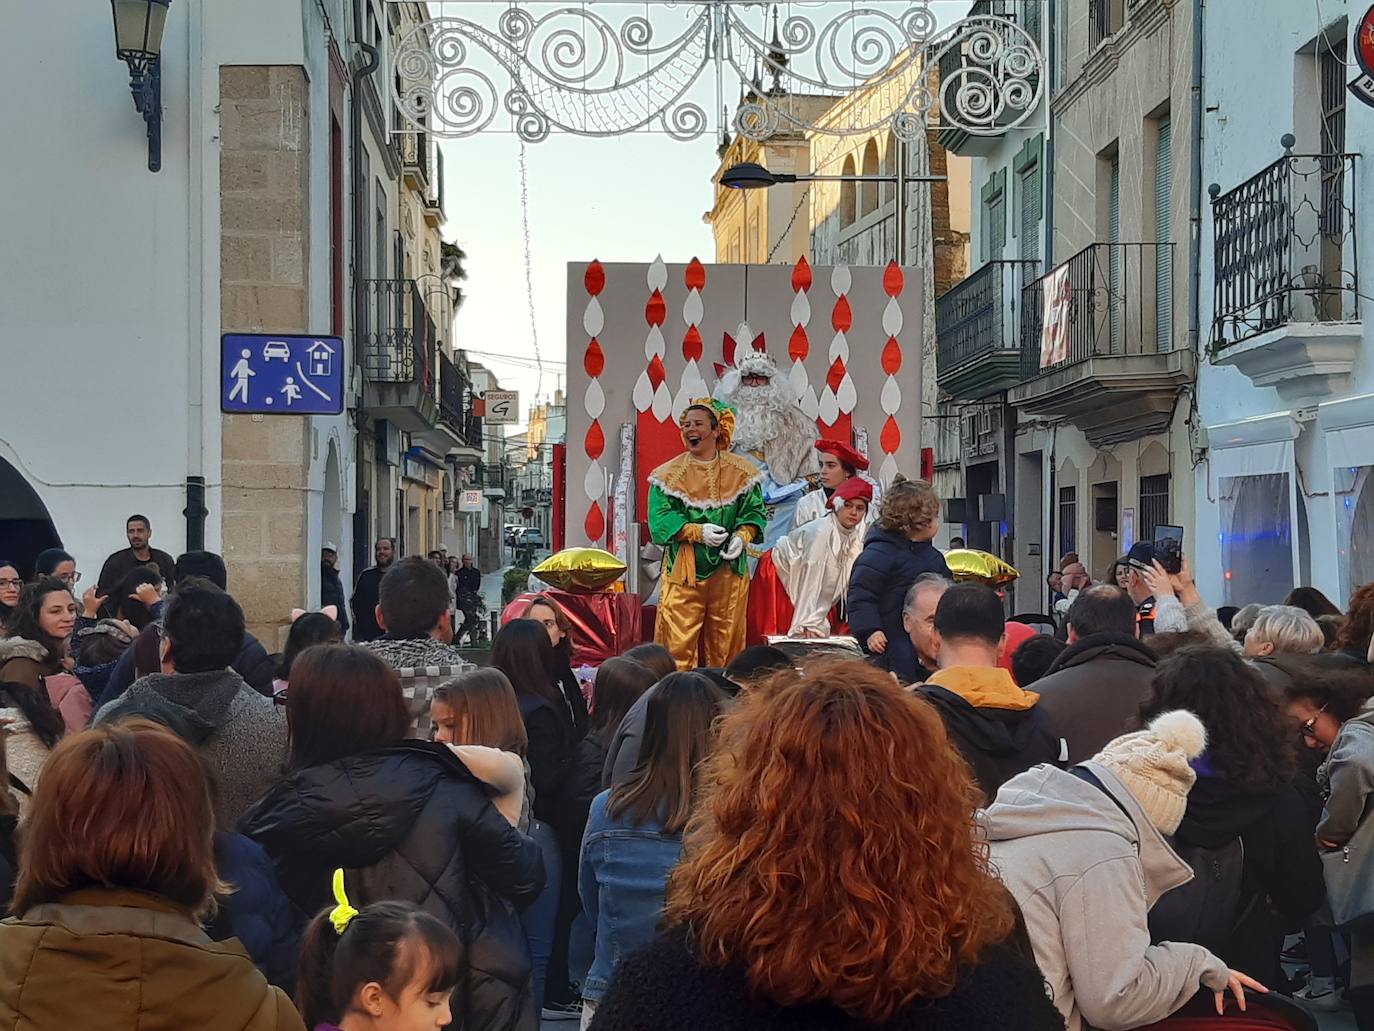 Imagen principal - Tarde de ilusión en Casar de Cáceres por la llegada de los Reyes Magos